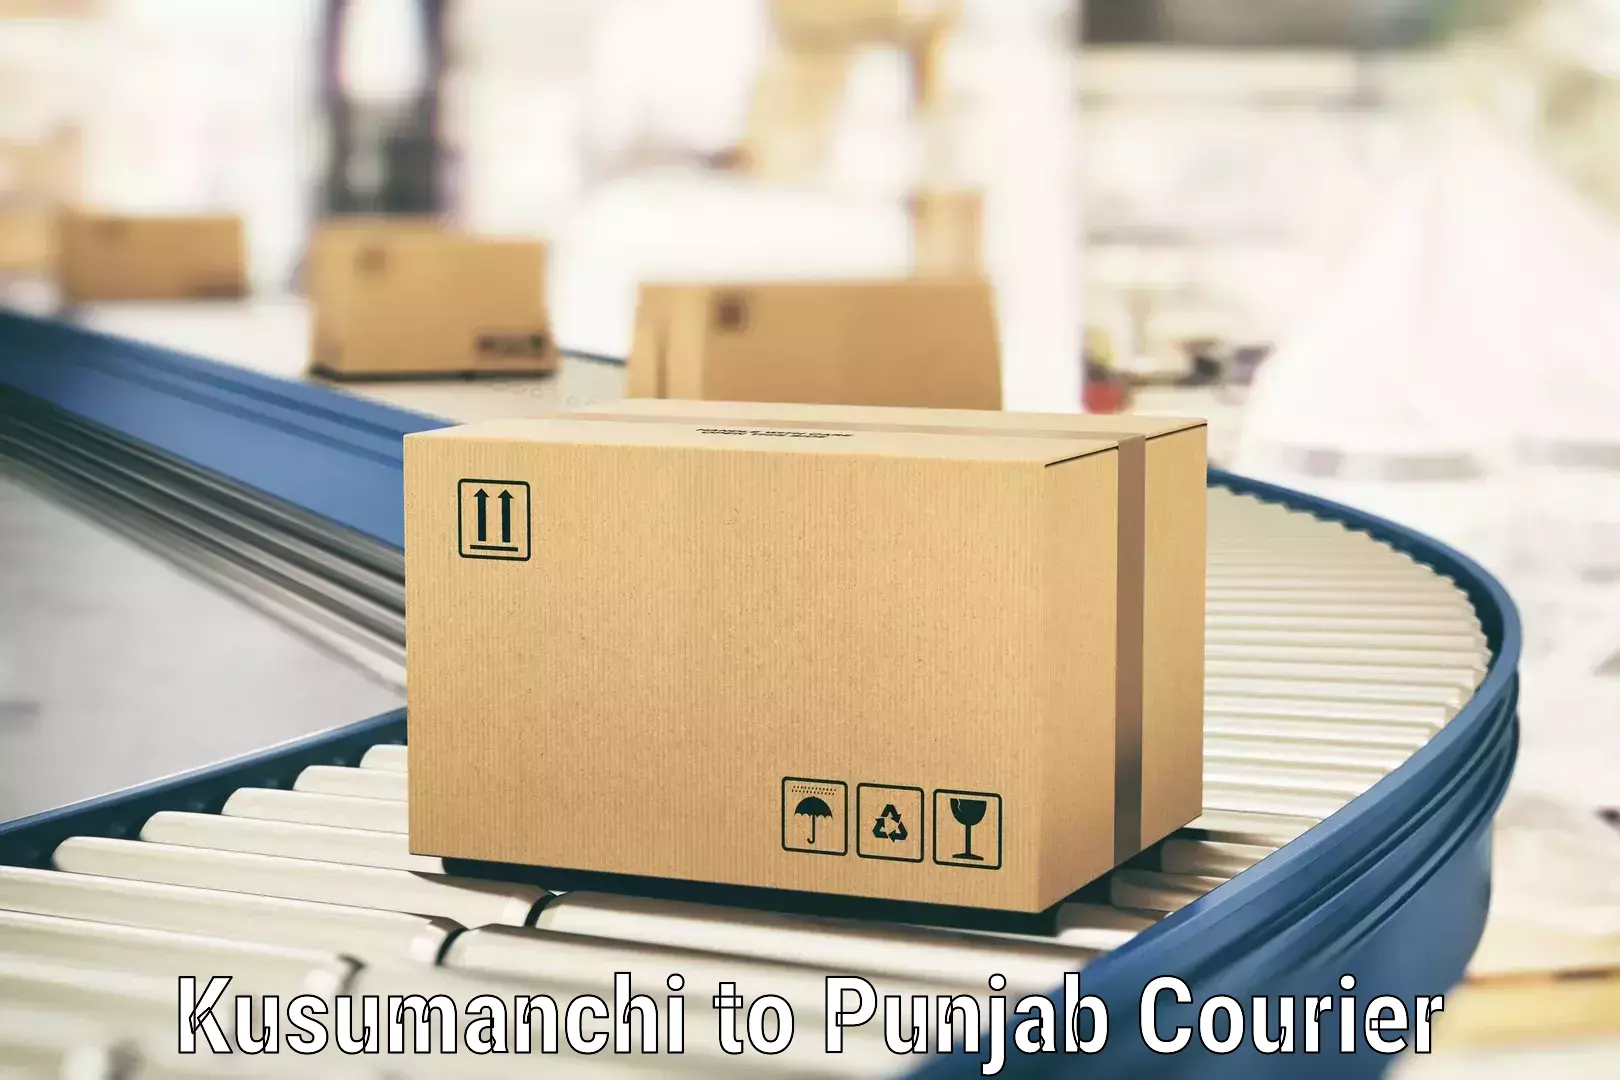 On-demand shipping options Kusumanchi to Central University of Punjab Bathinda